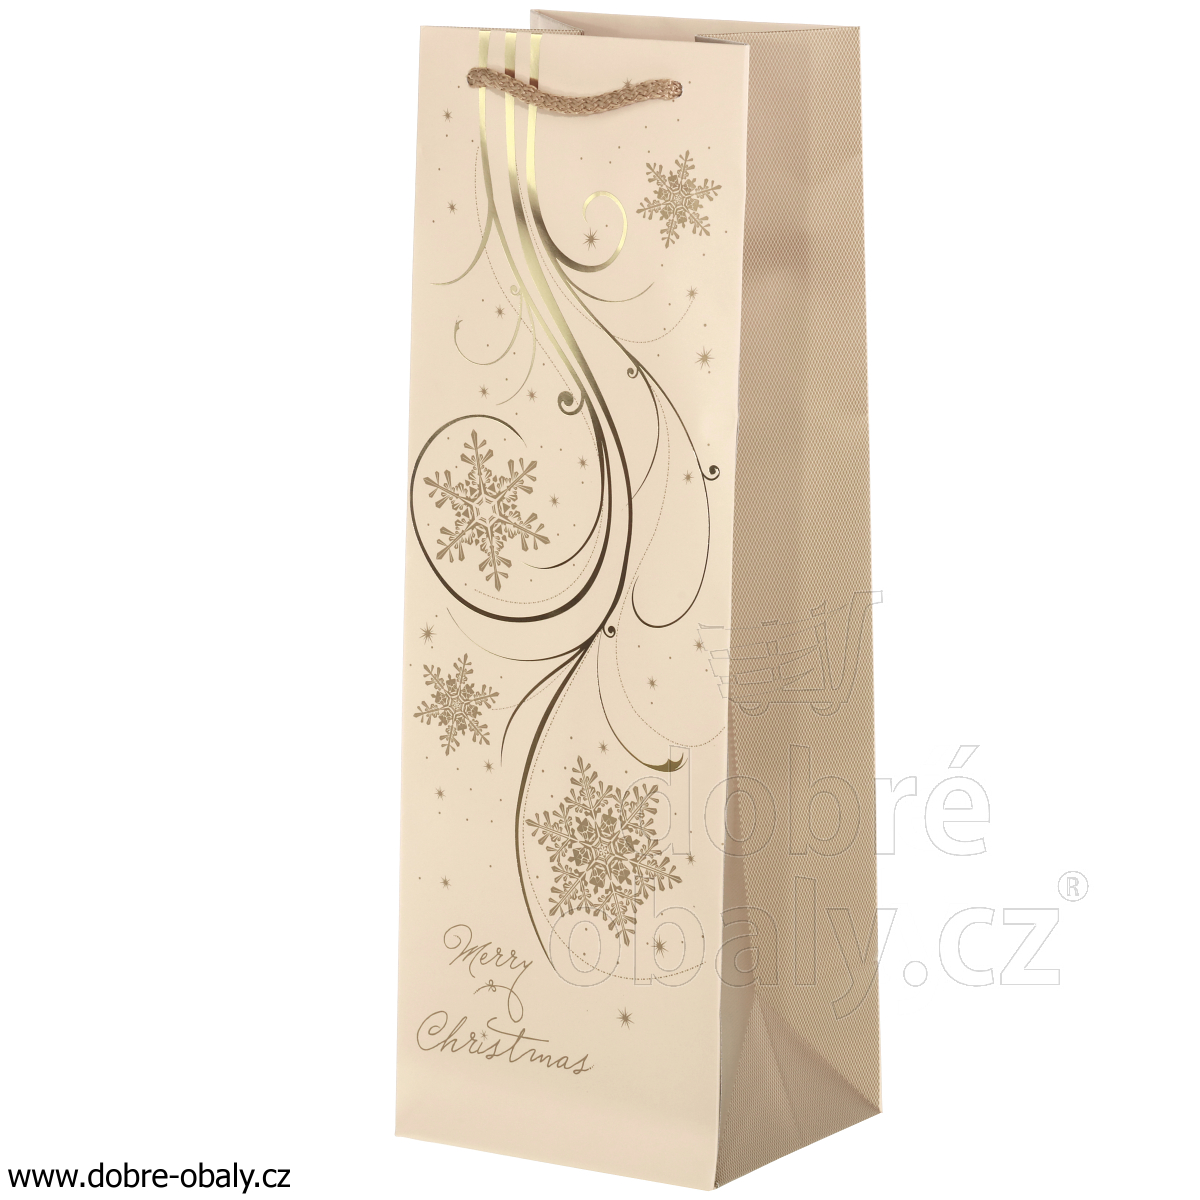 Papírová taška na víno LUX - KRÉMOVÁ text 48626, výhodné balení